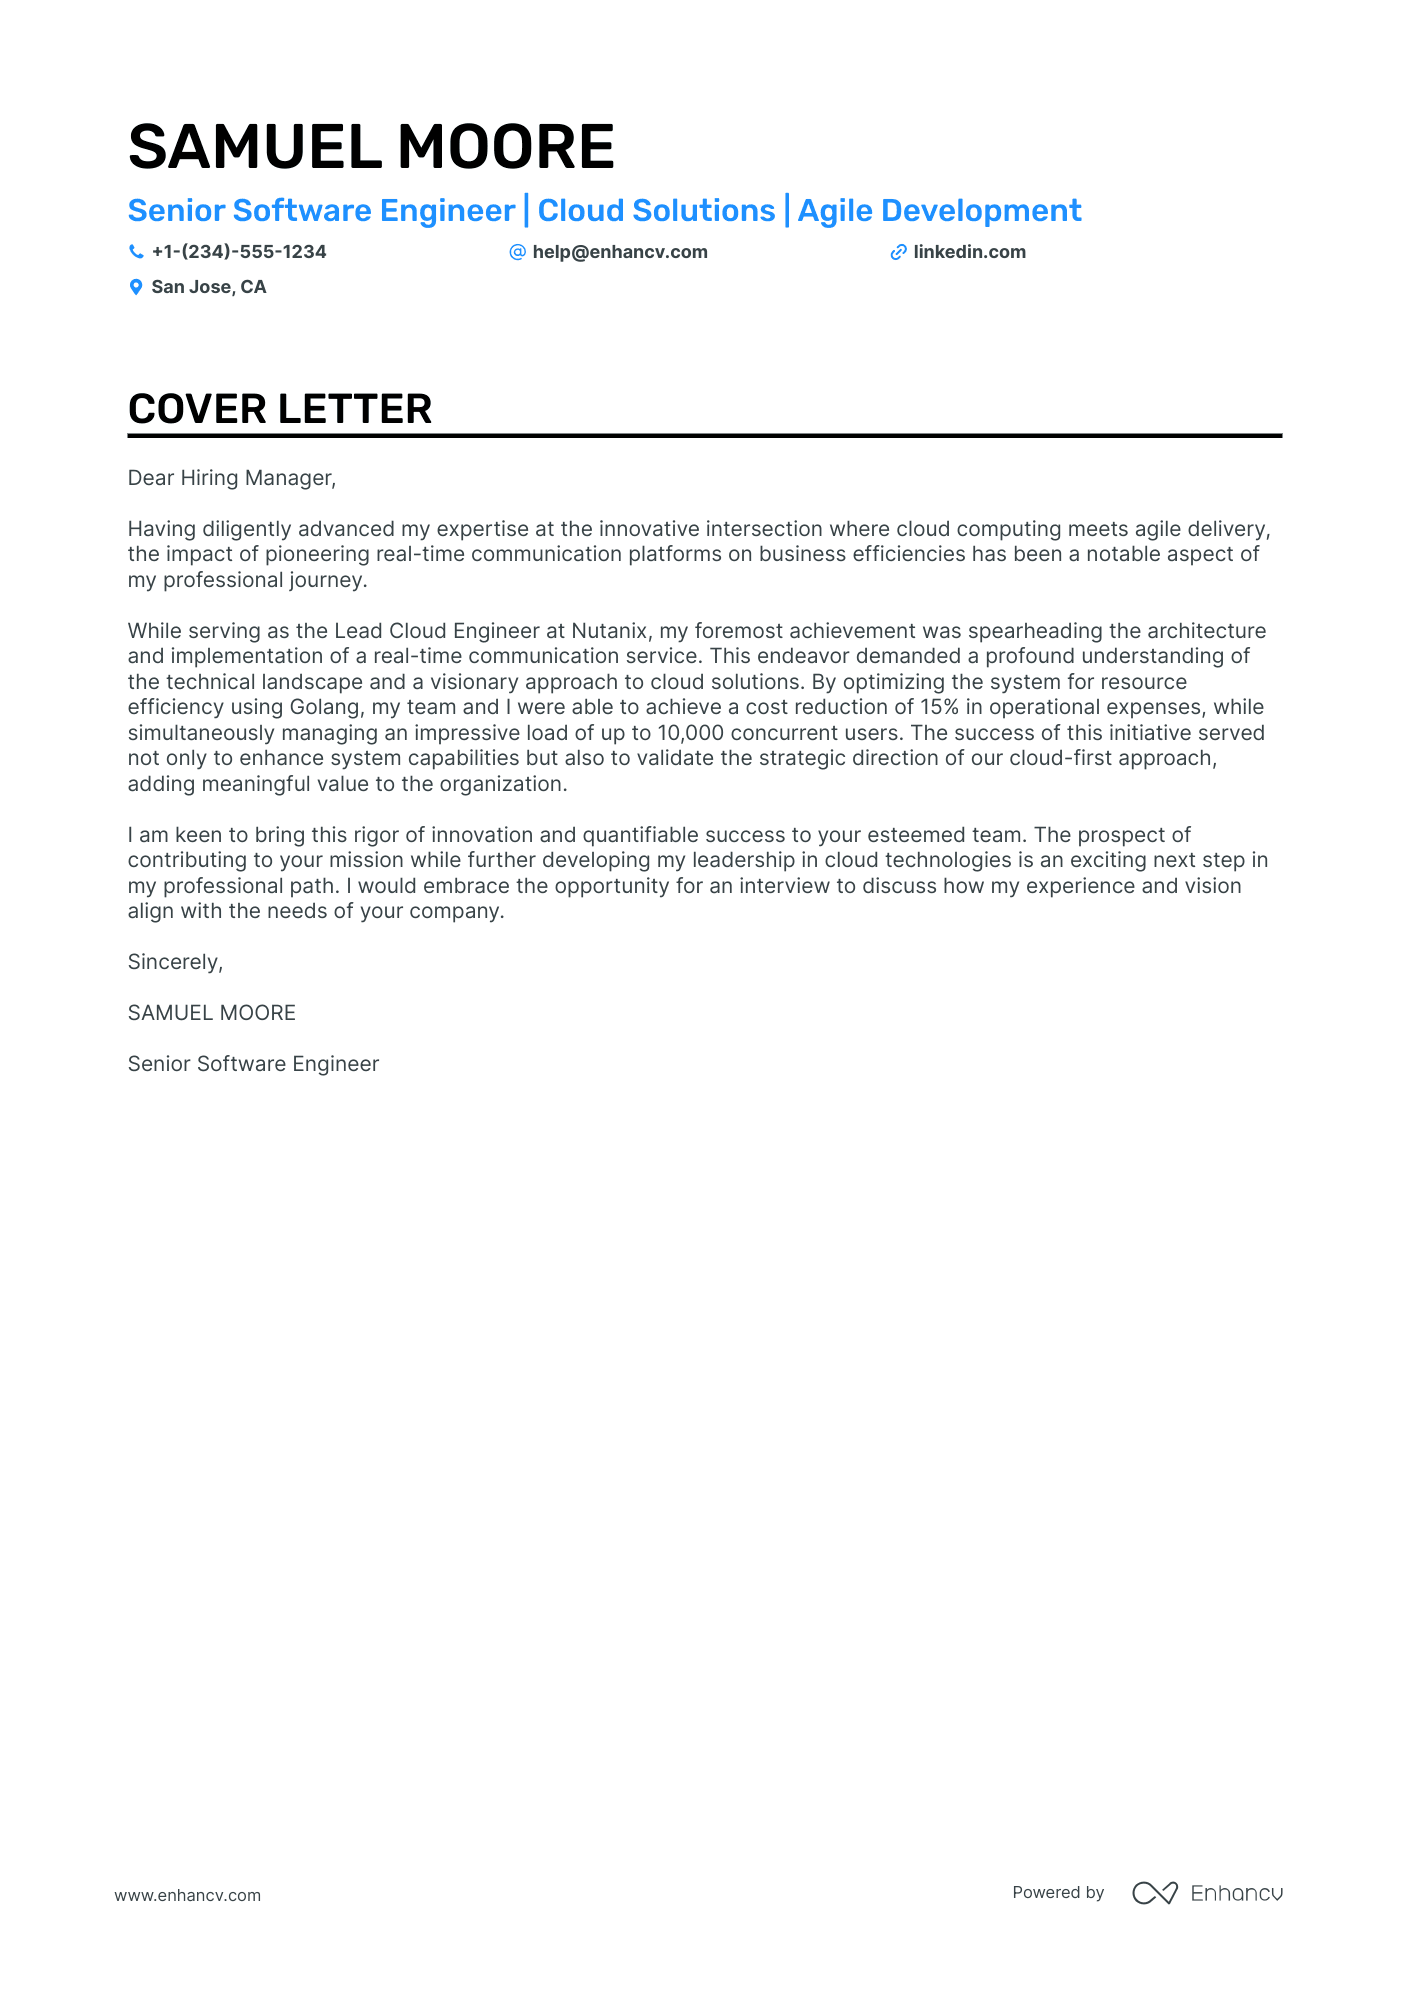 cover letter for web developer trainee